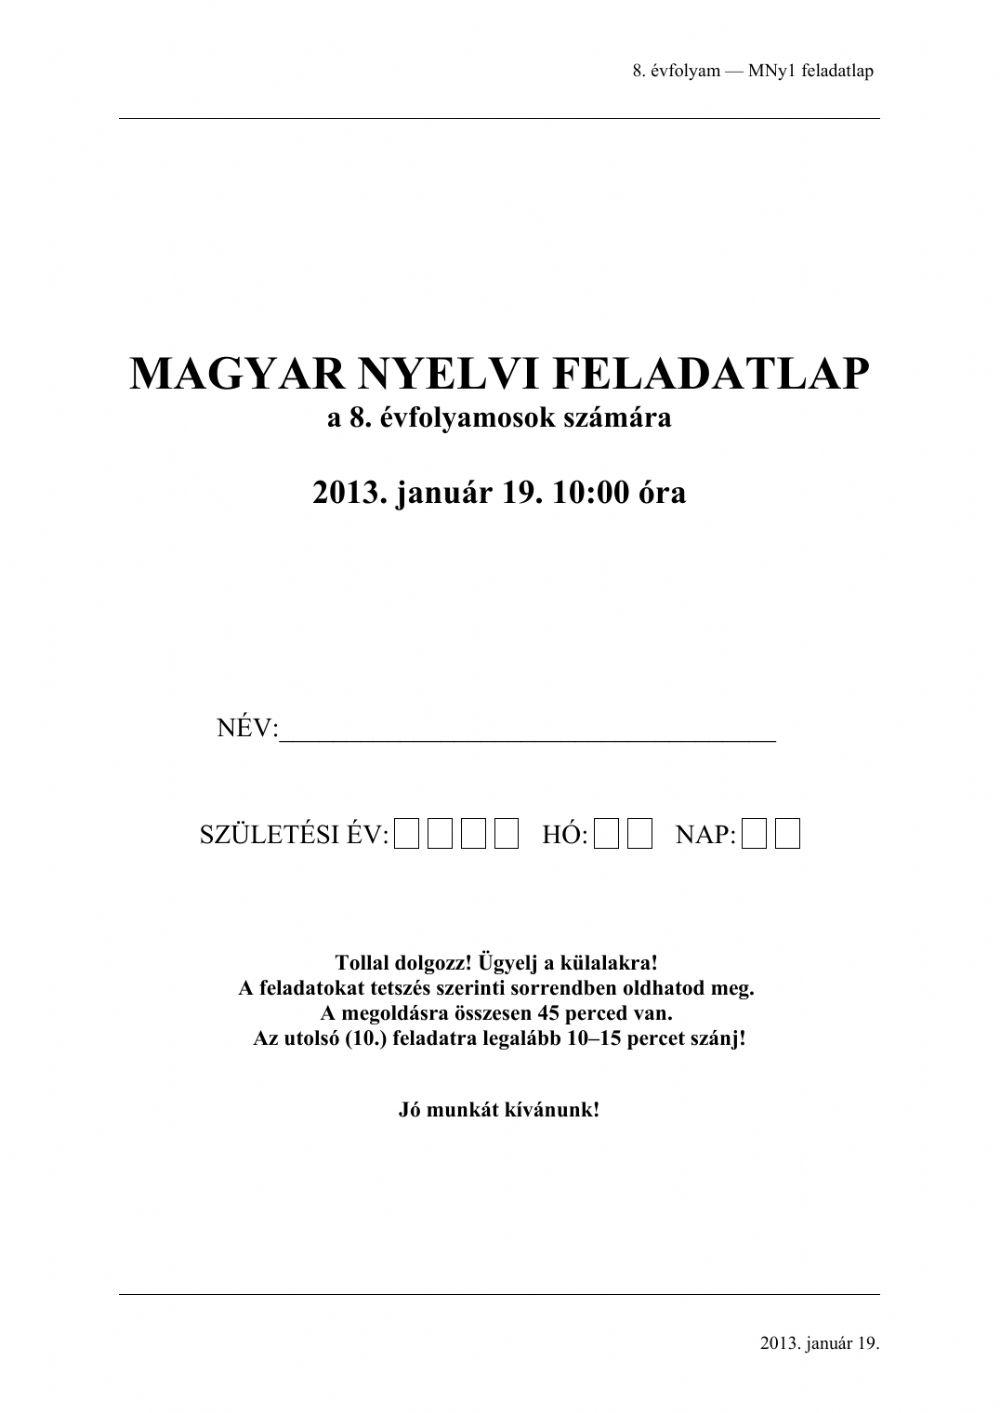 Magyar nyelvtan 2013.01.19.